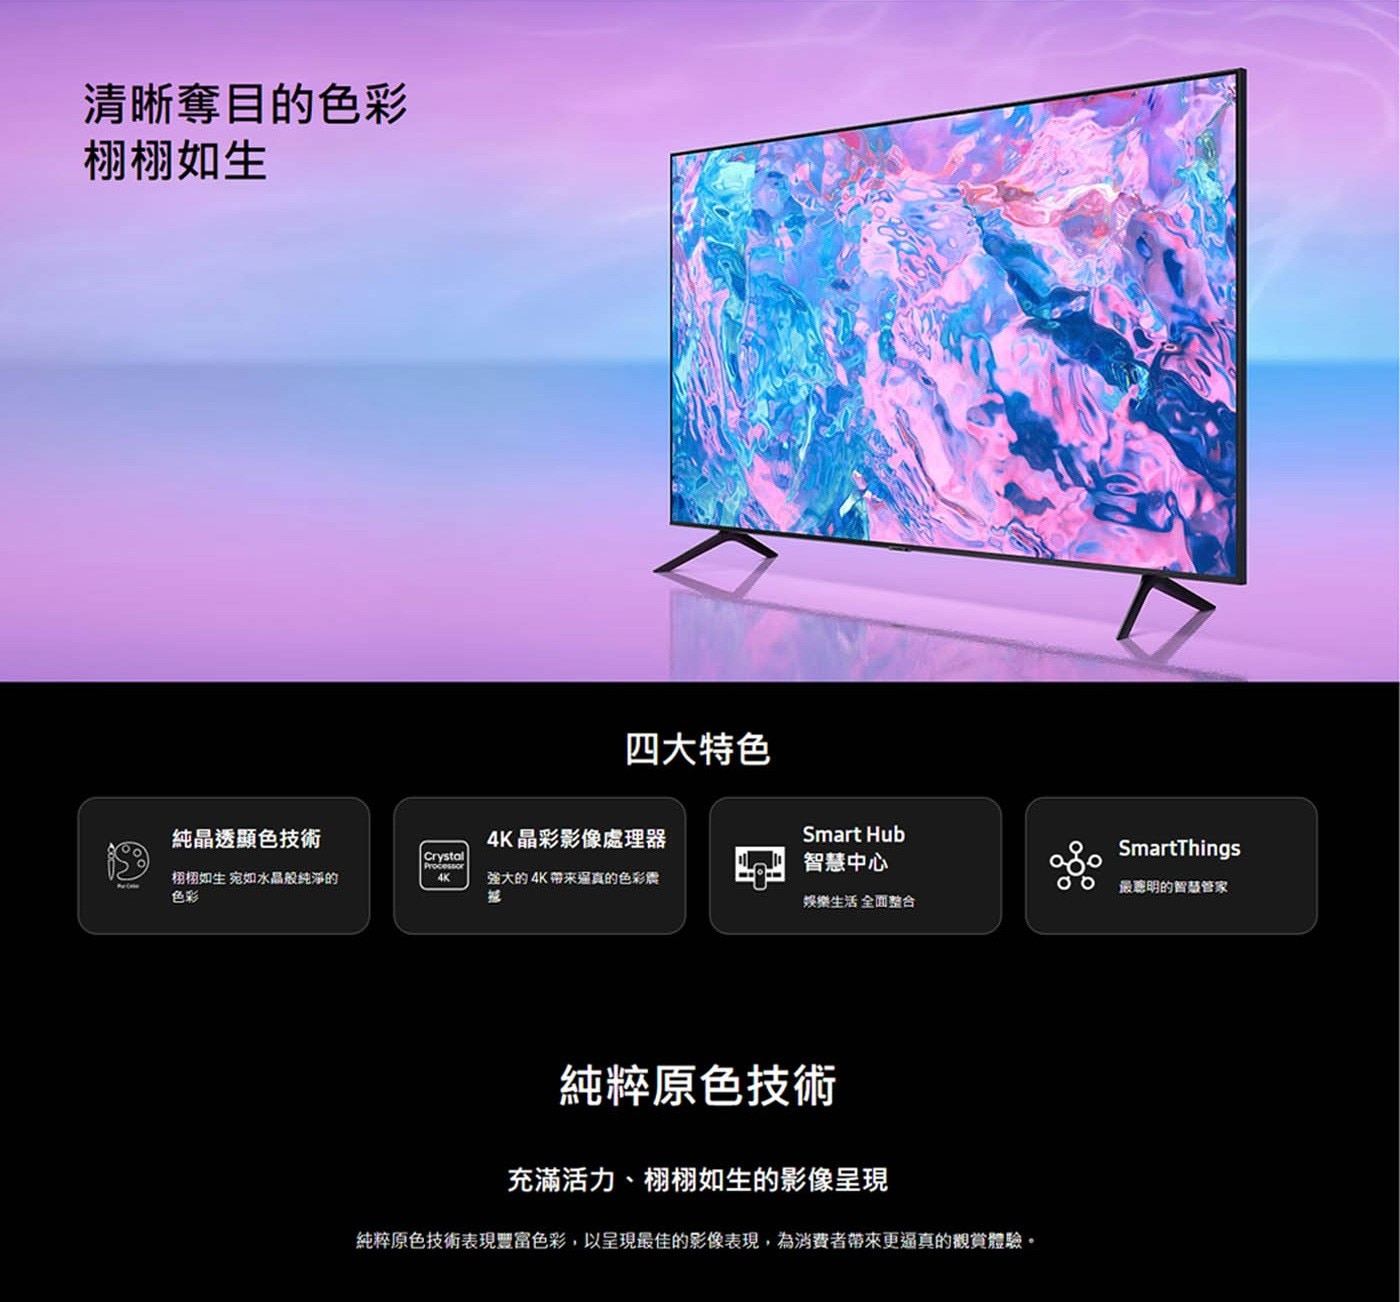 Samsung 55吋 4K UHD 電視 UA55CU7700XXZW清晰奪目的色彩栩栩如生純晶透顯色4K精彩影像處理smart hub smartThings